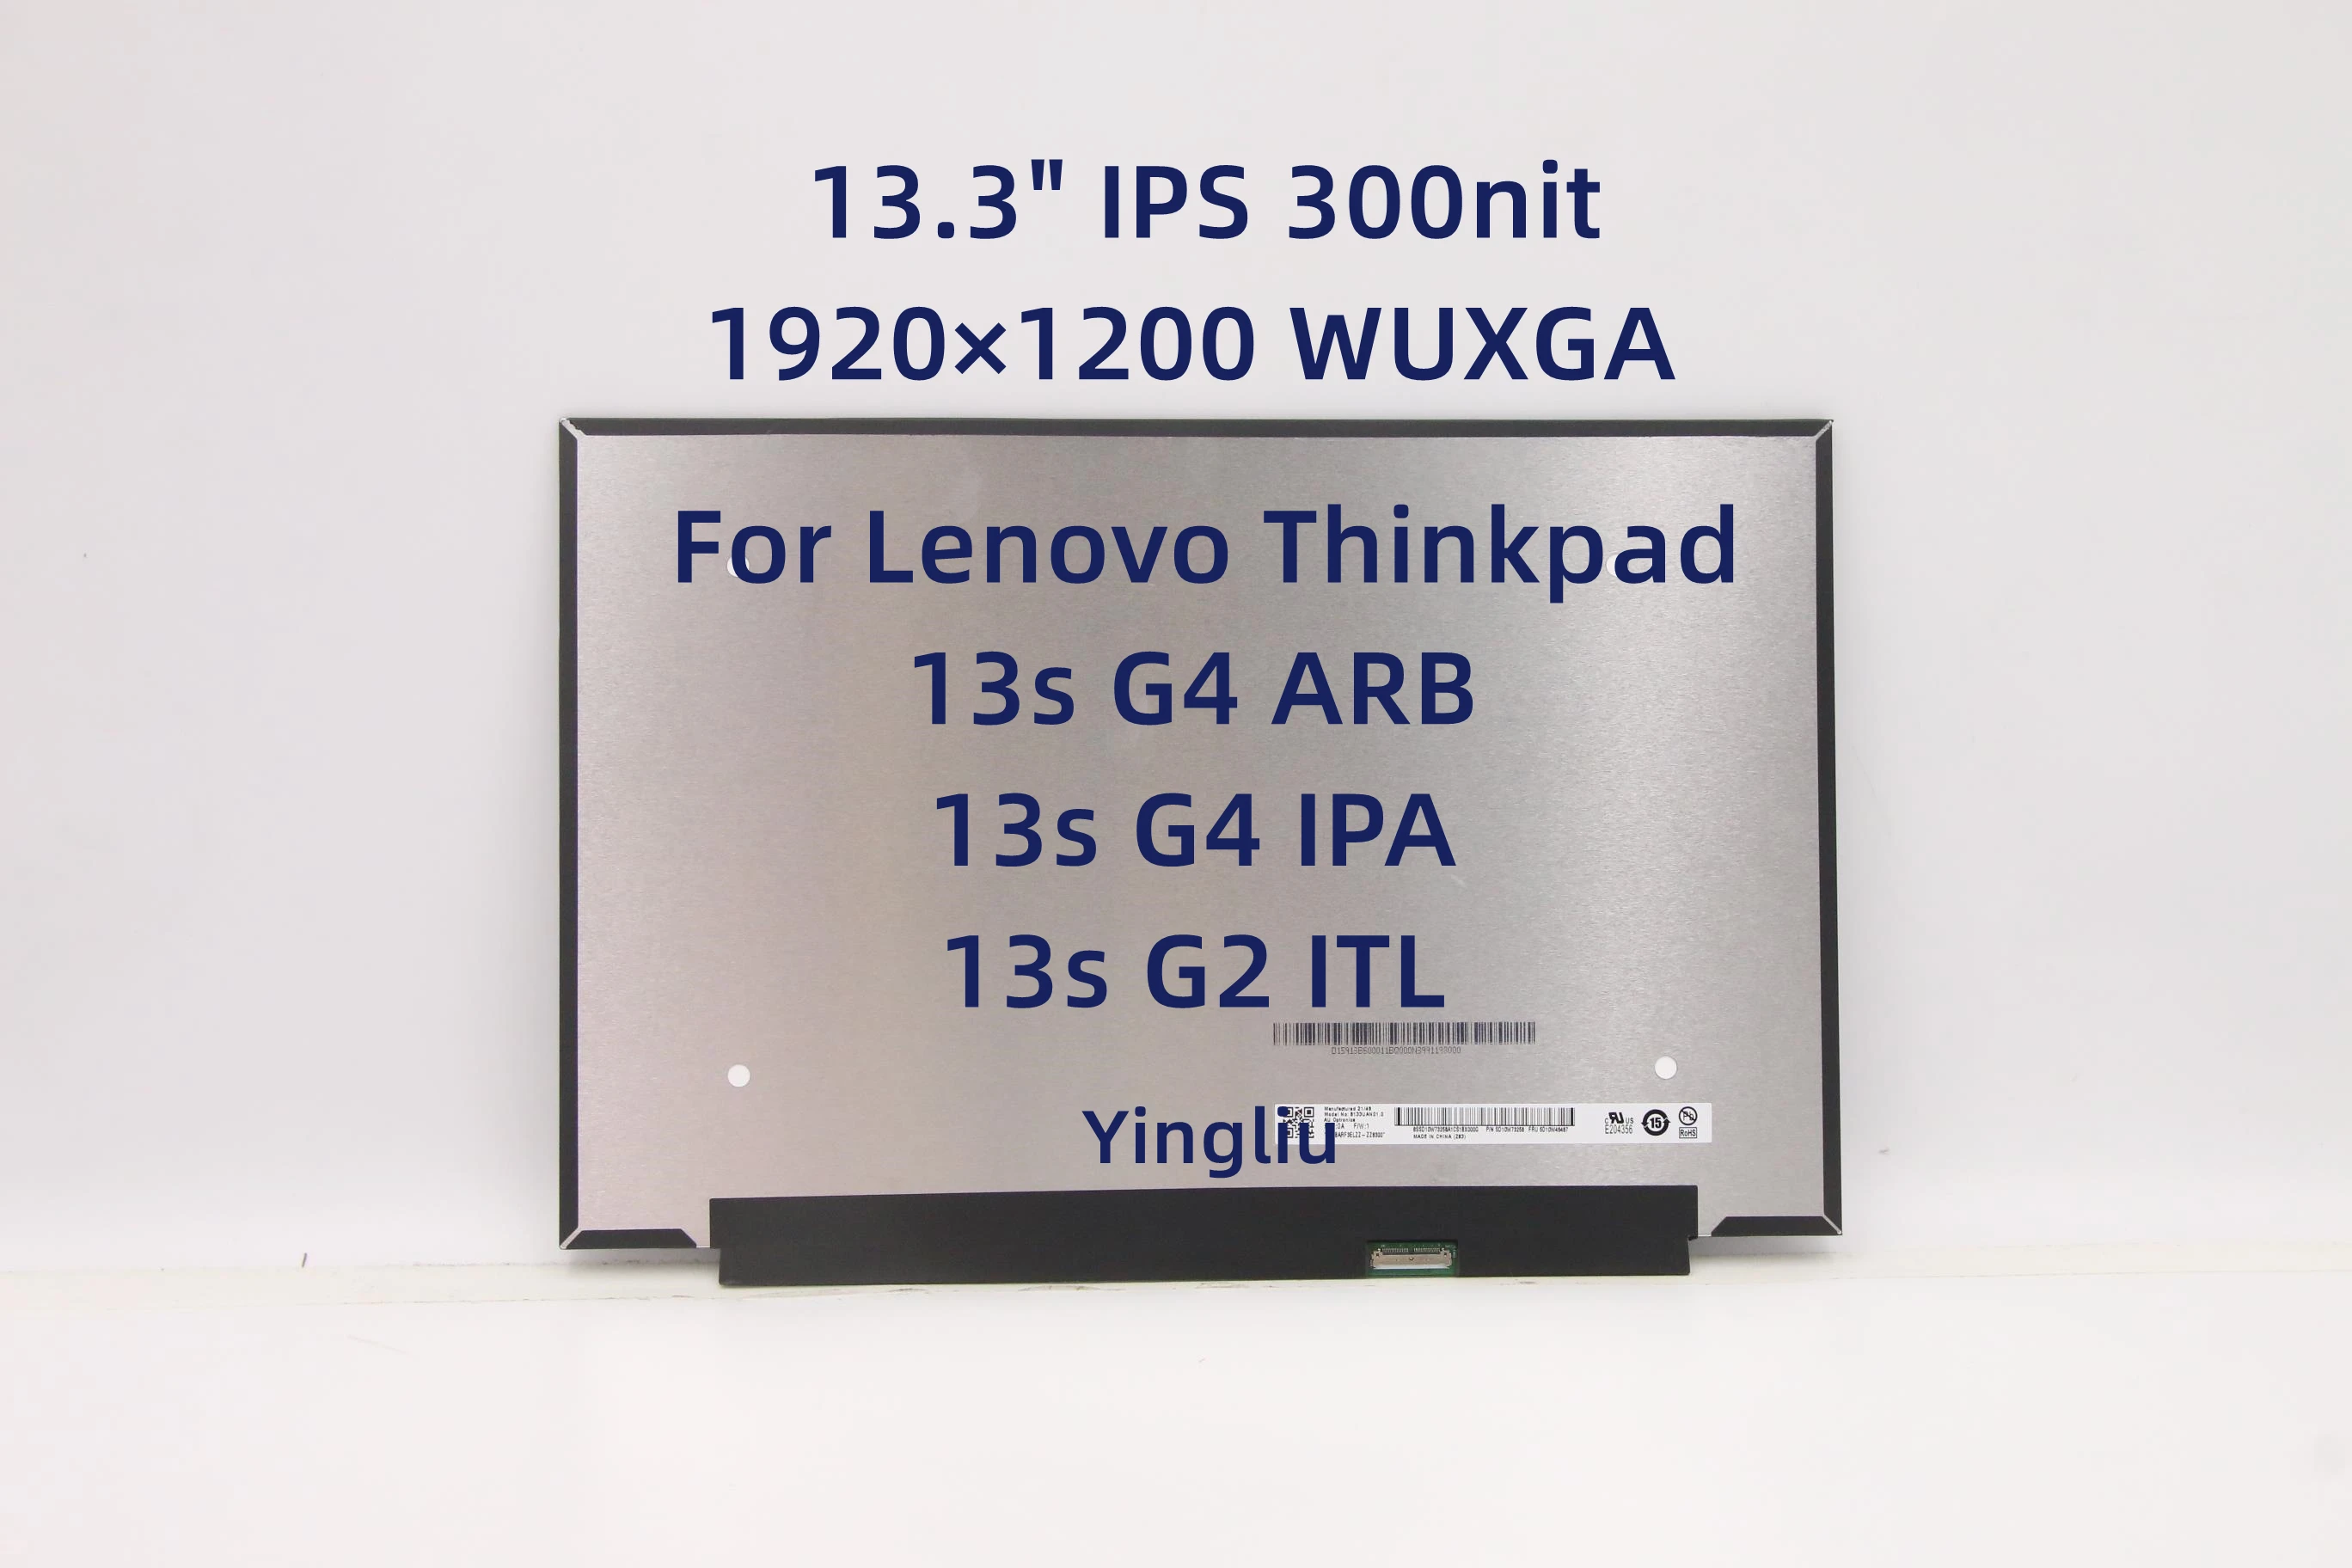  - 13, 3   Lenovo Thinkpad 13s G4 ARB/IPA 13s G2 ITL 5D10W46487 5D10W46488 5D11B38526 1920   1200 WUXGA IPS 300nit